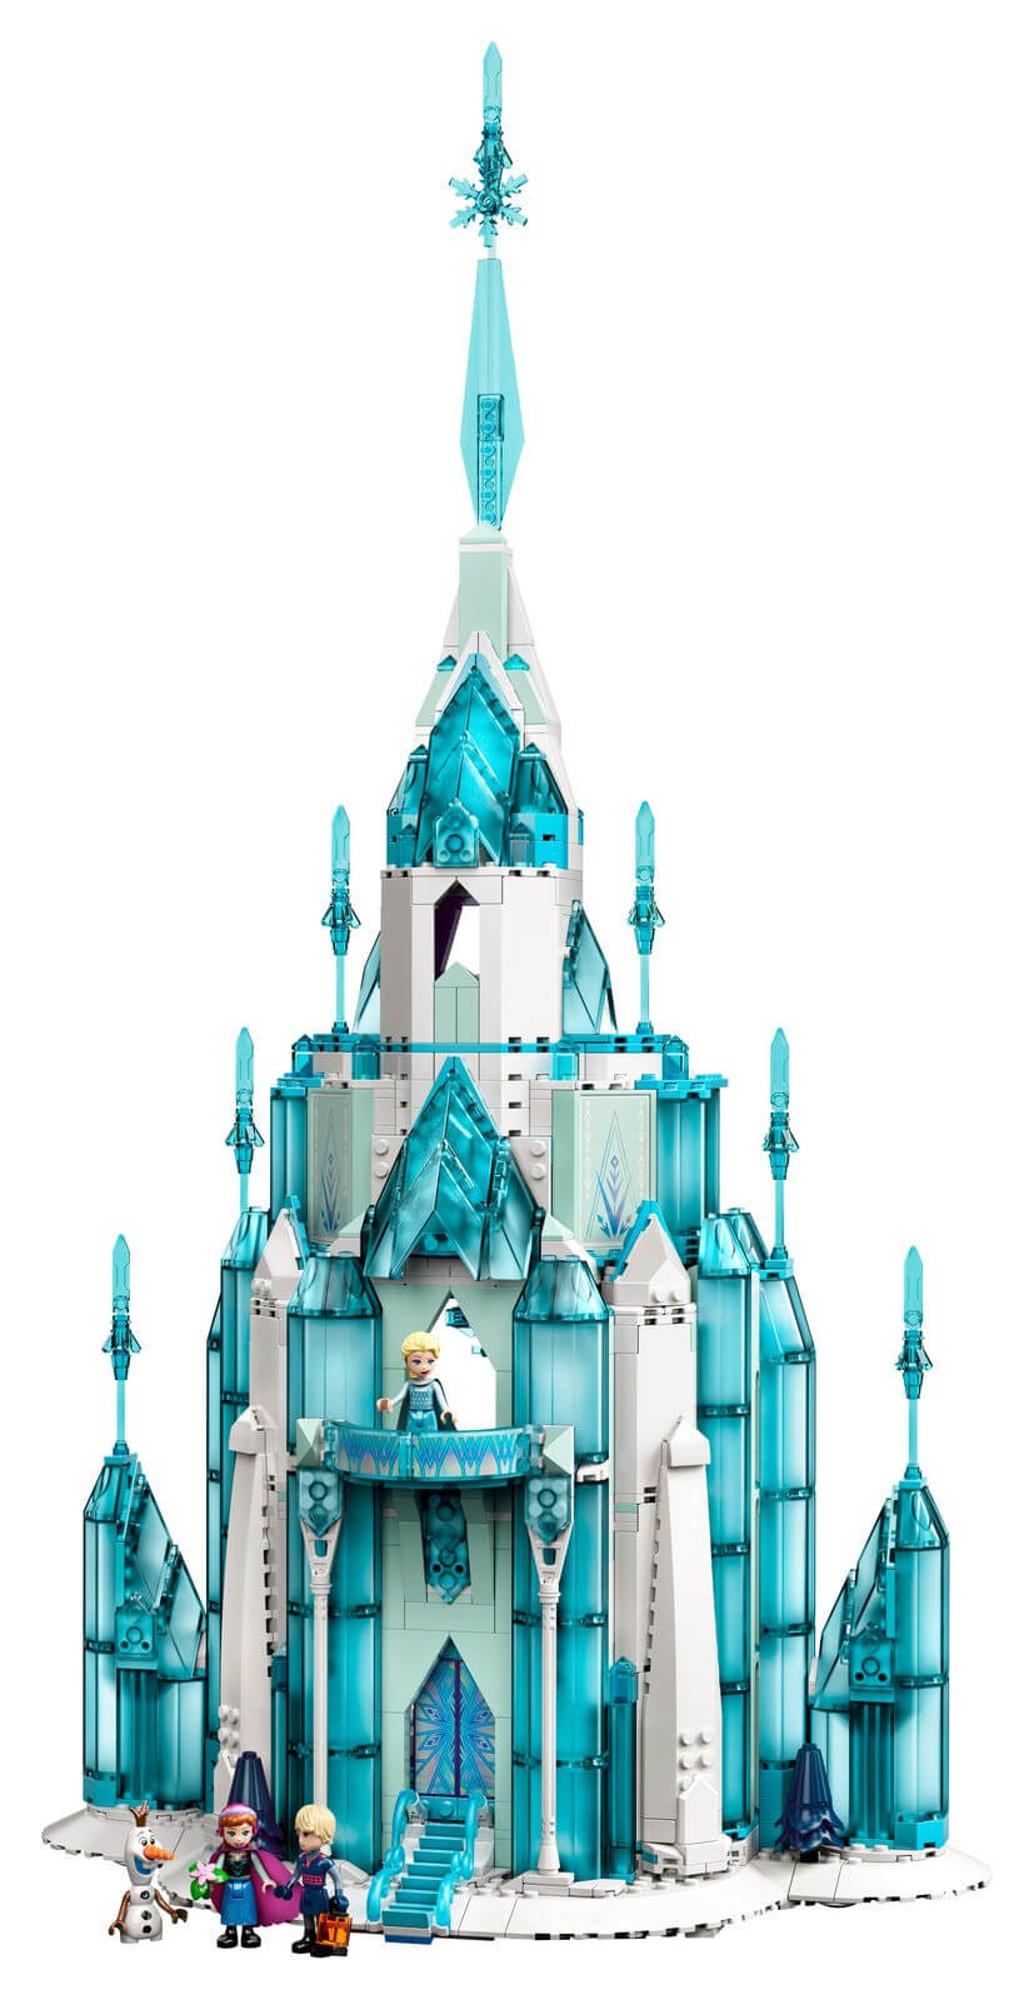 LEGO Disney The Ice Castle